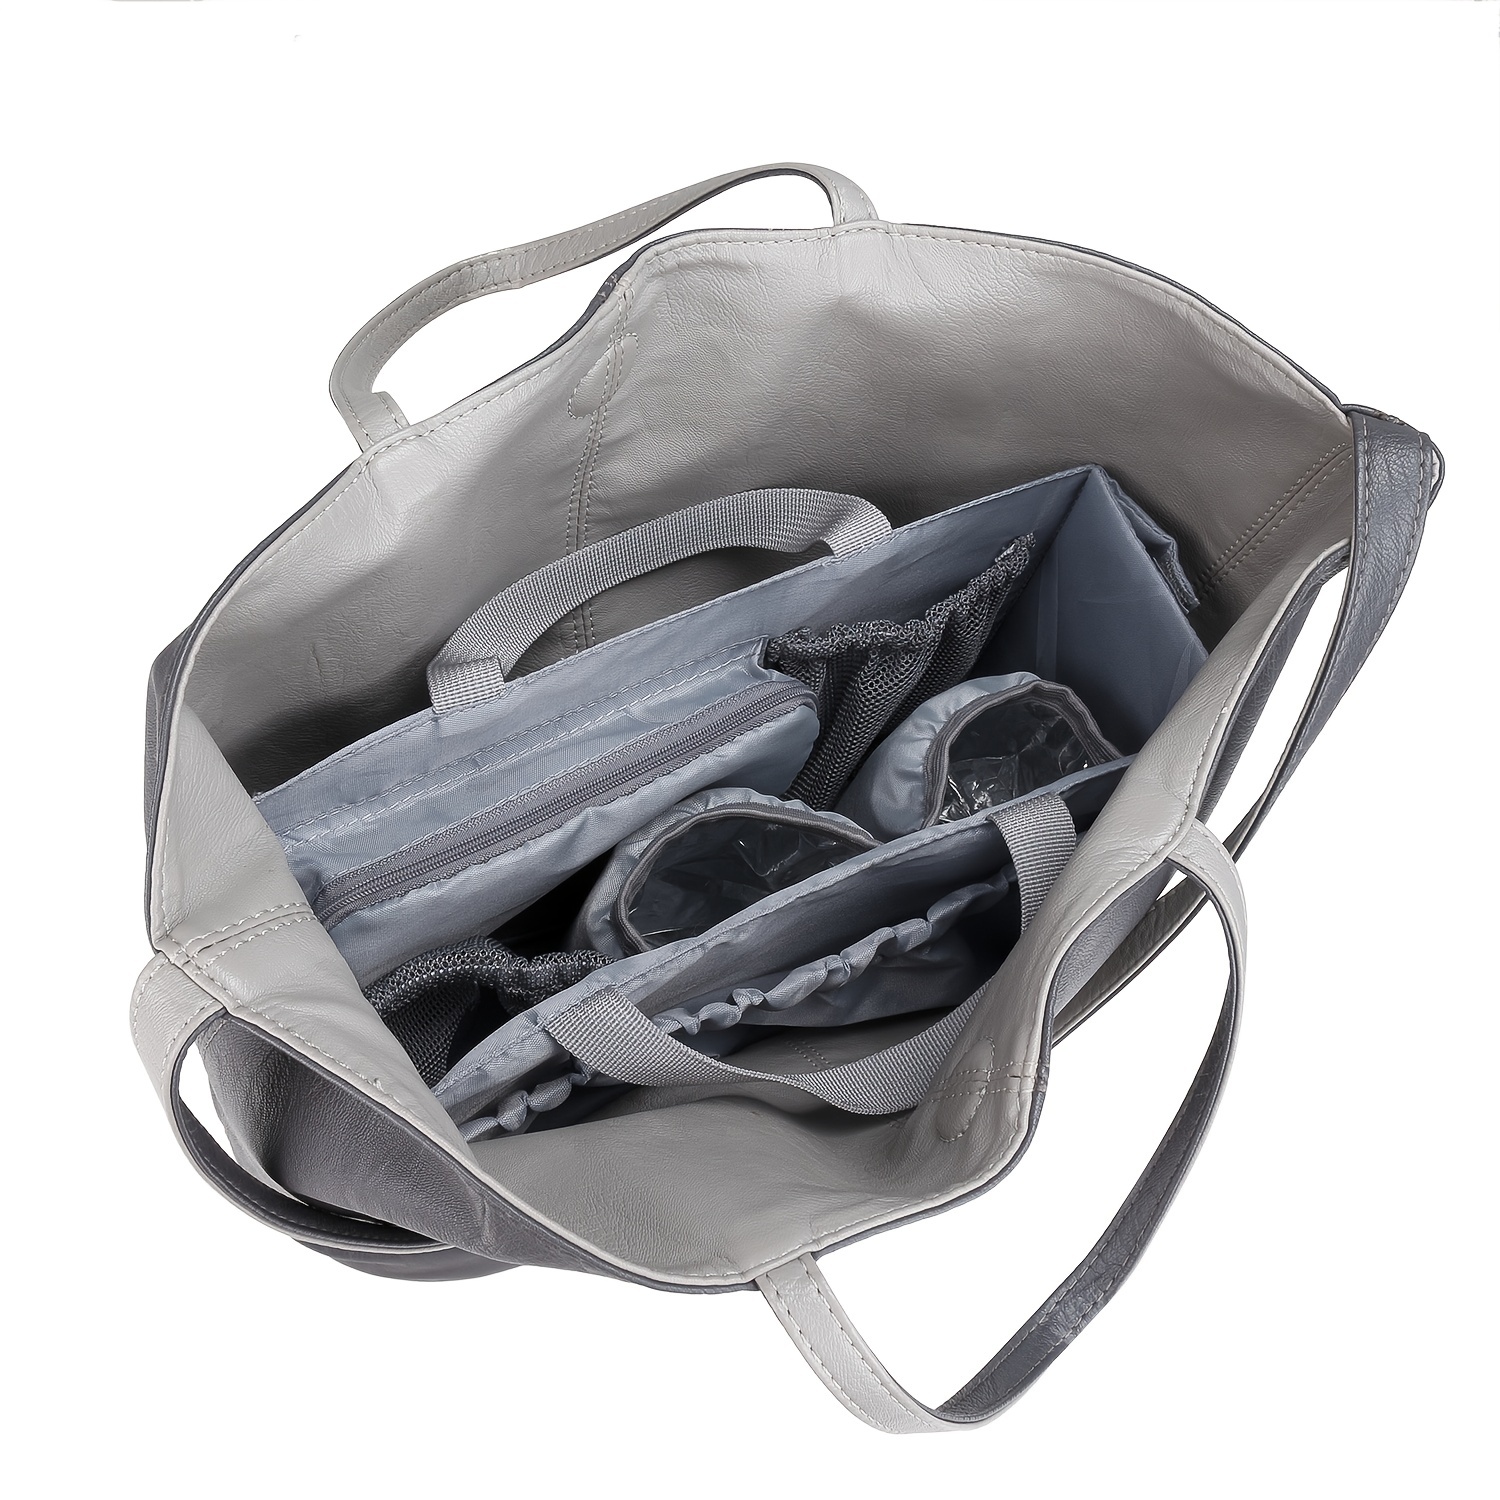 Backpack Insert Storage Bag, Travel Organizer Felt Bag Insert